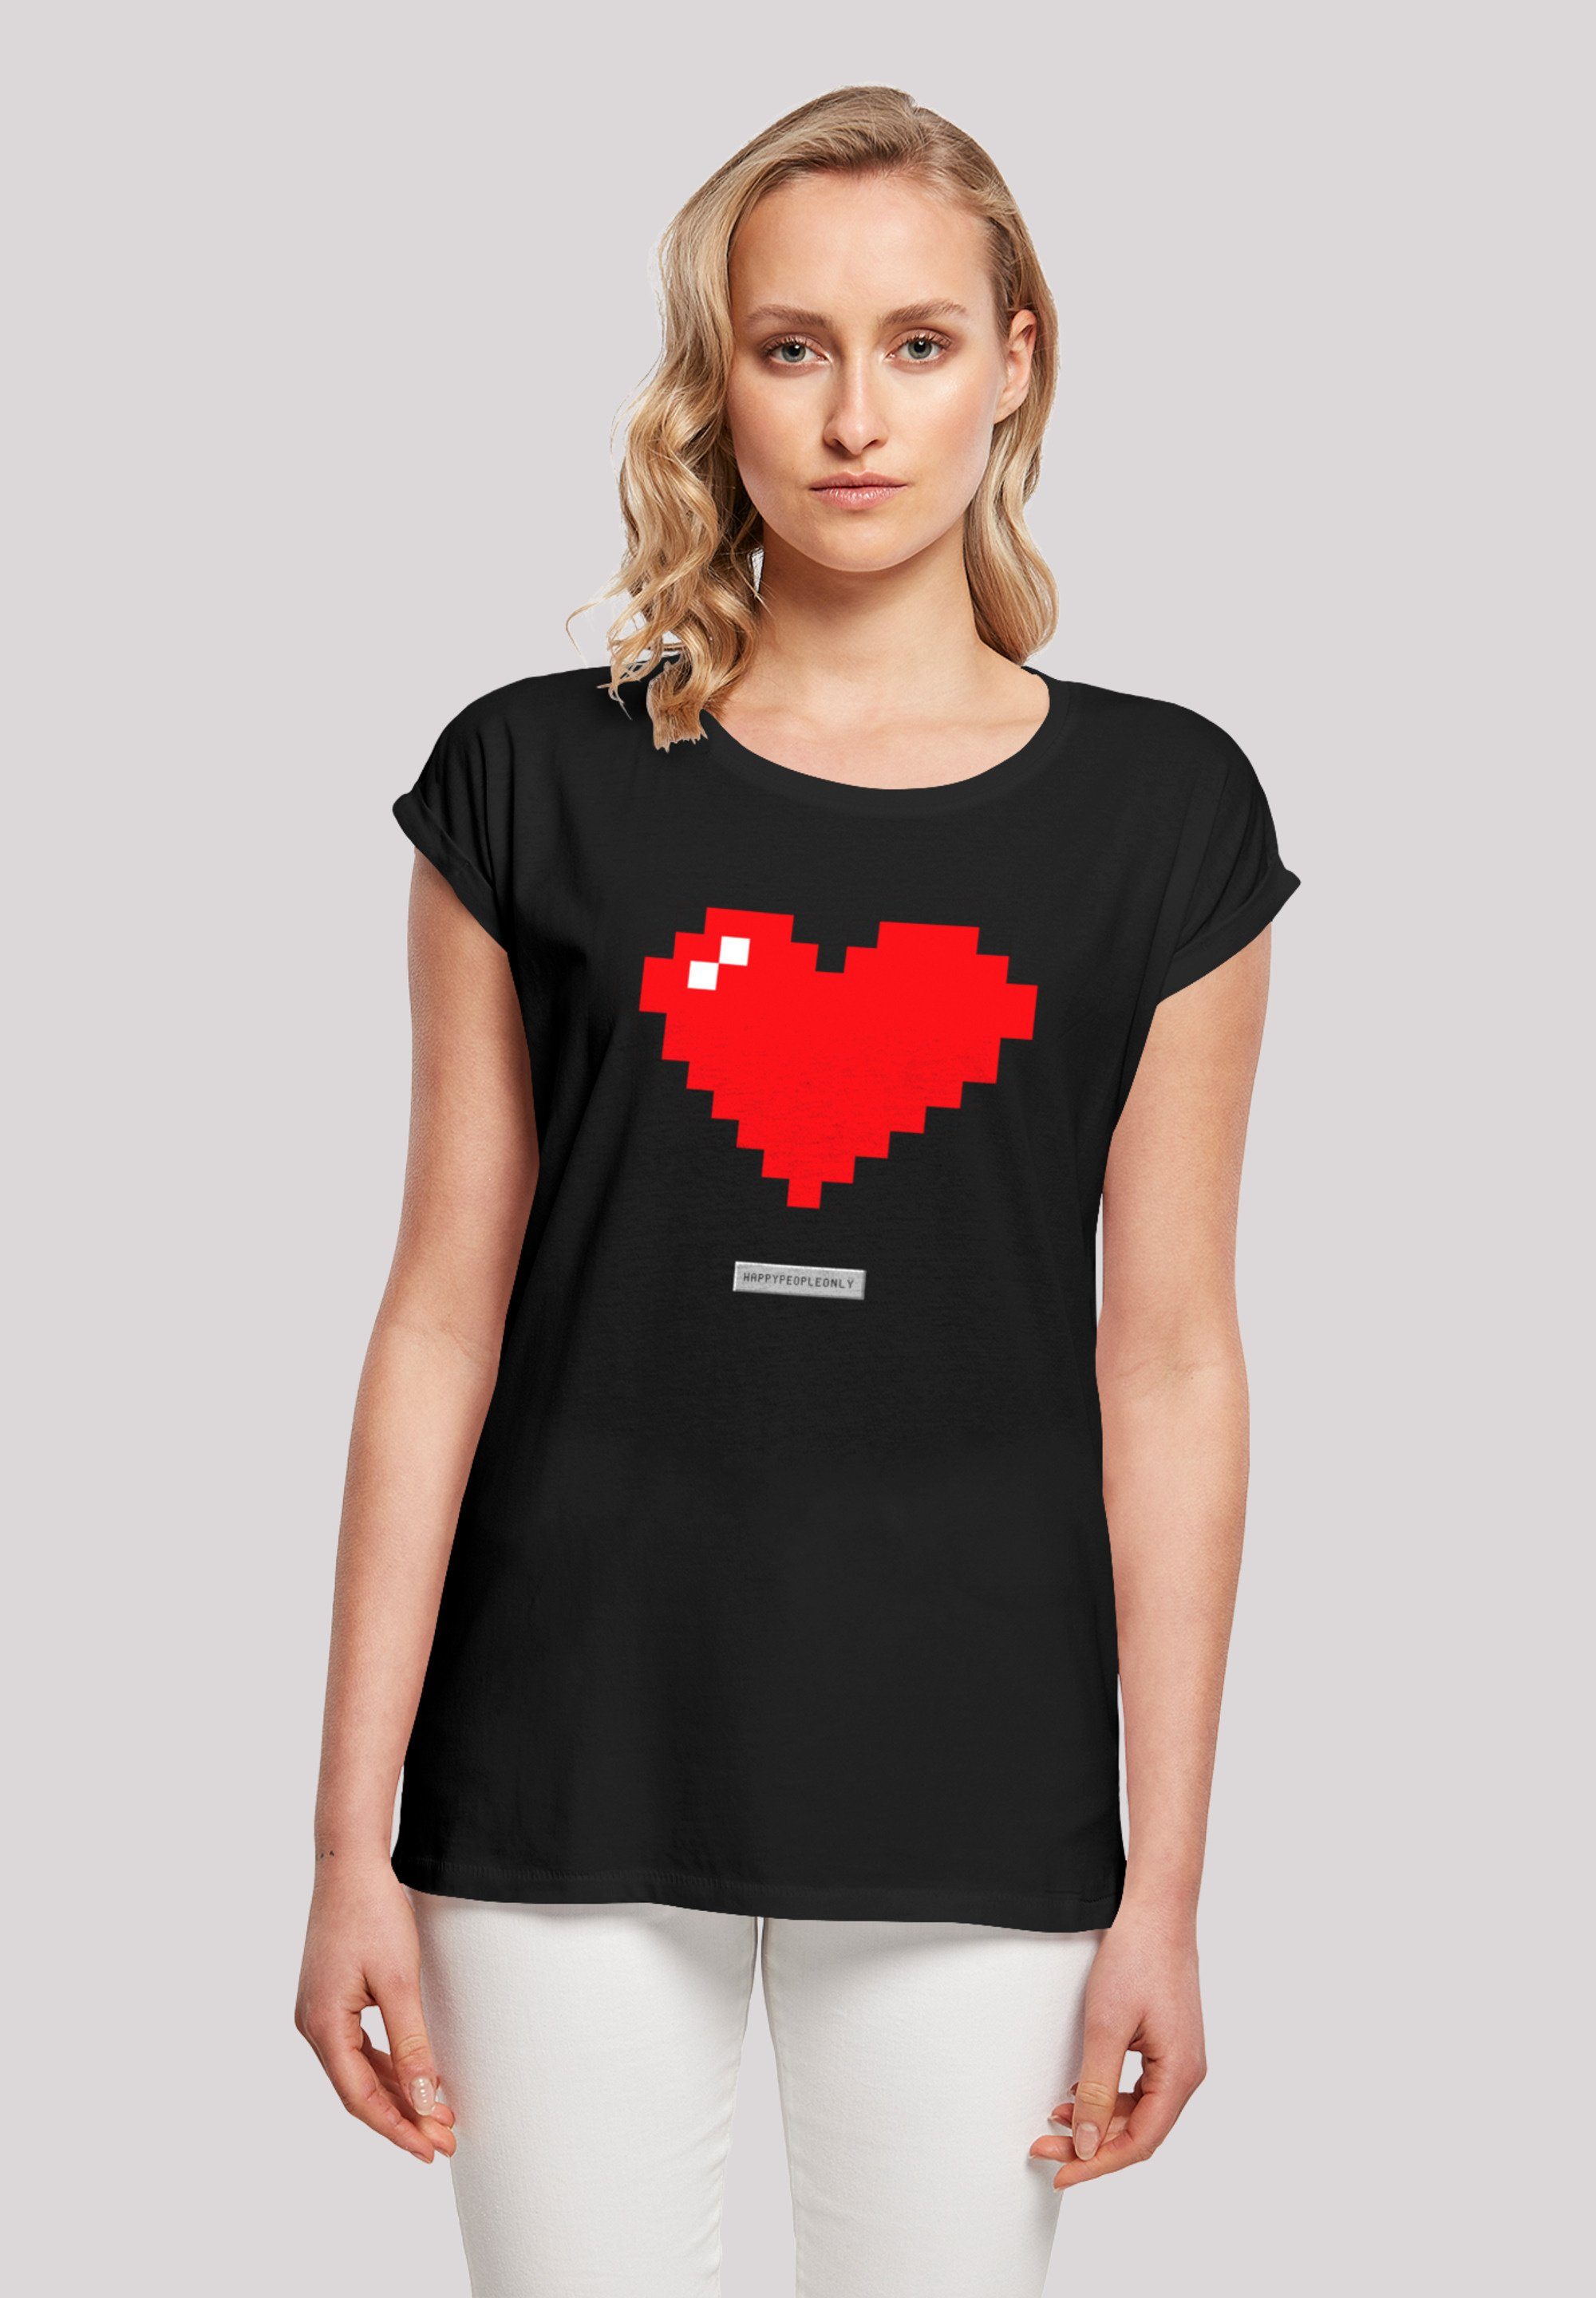 F4NT4STIC T-Shirt Herz trägt und cm ist People Happy 170 M Pixel Das Print, Model groß Größe Vibes Good